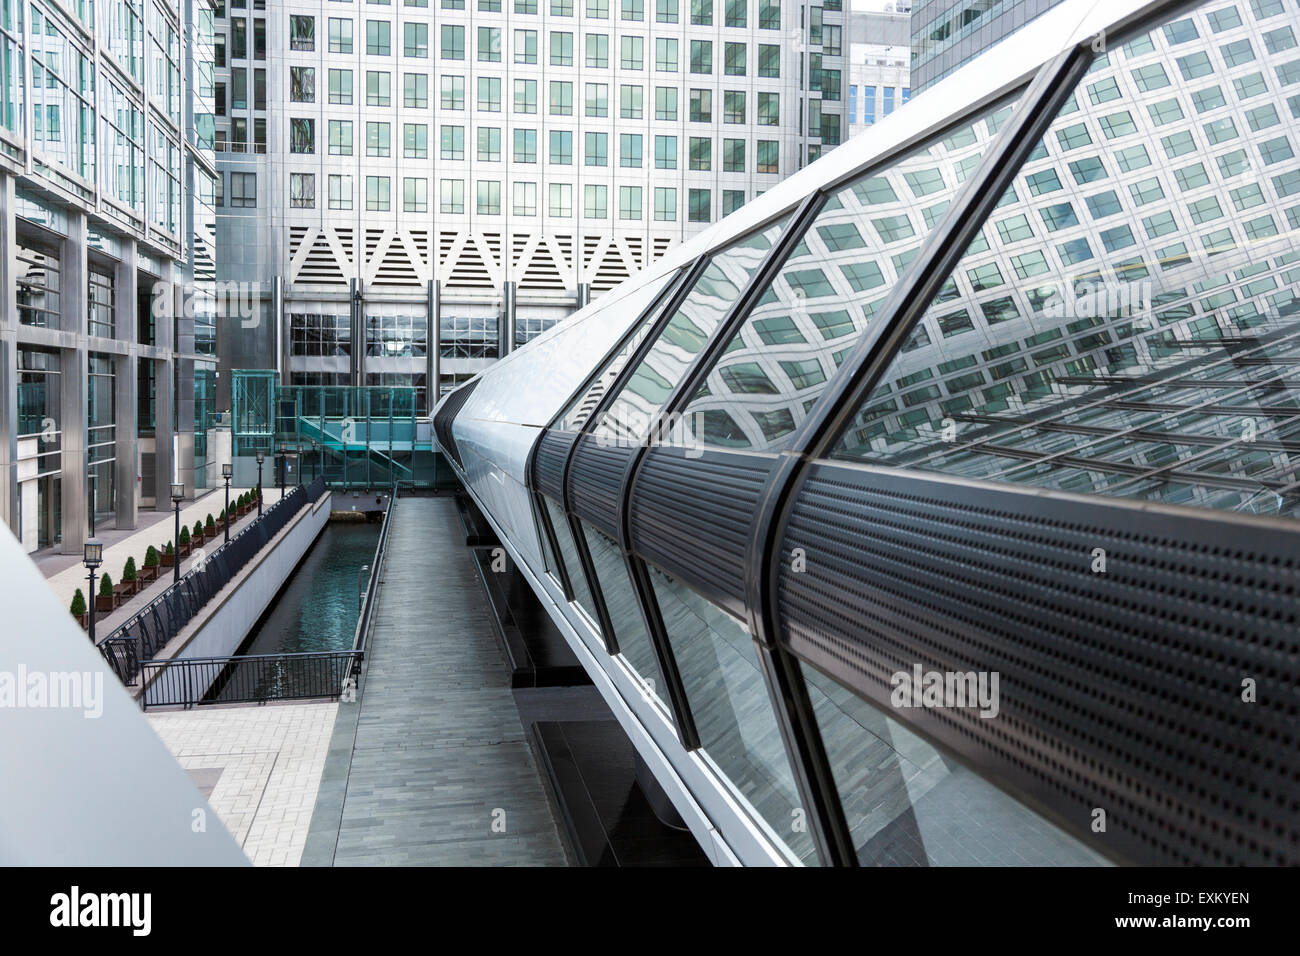 Nouvelle allée menant à la station Canary Wharf Traverse - juillet 2015, Londres, Angleterre Banque D'Images